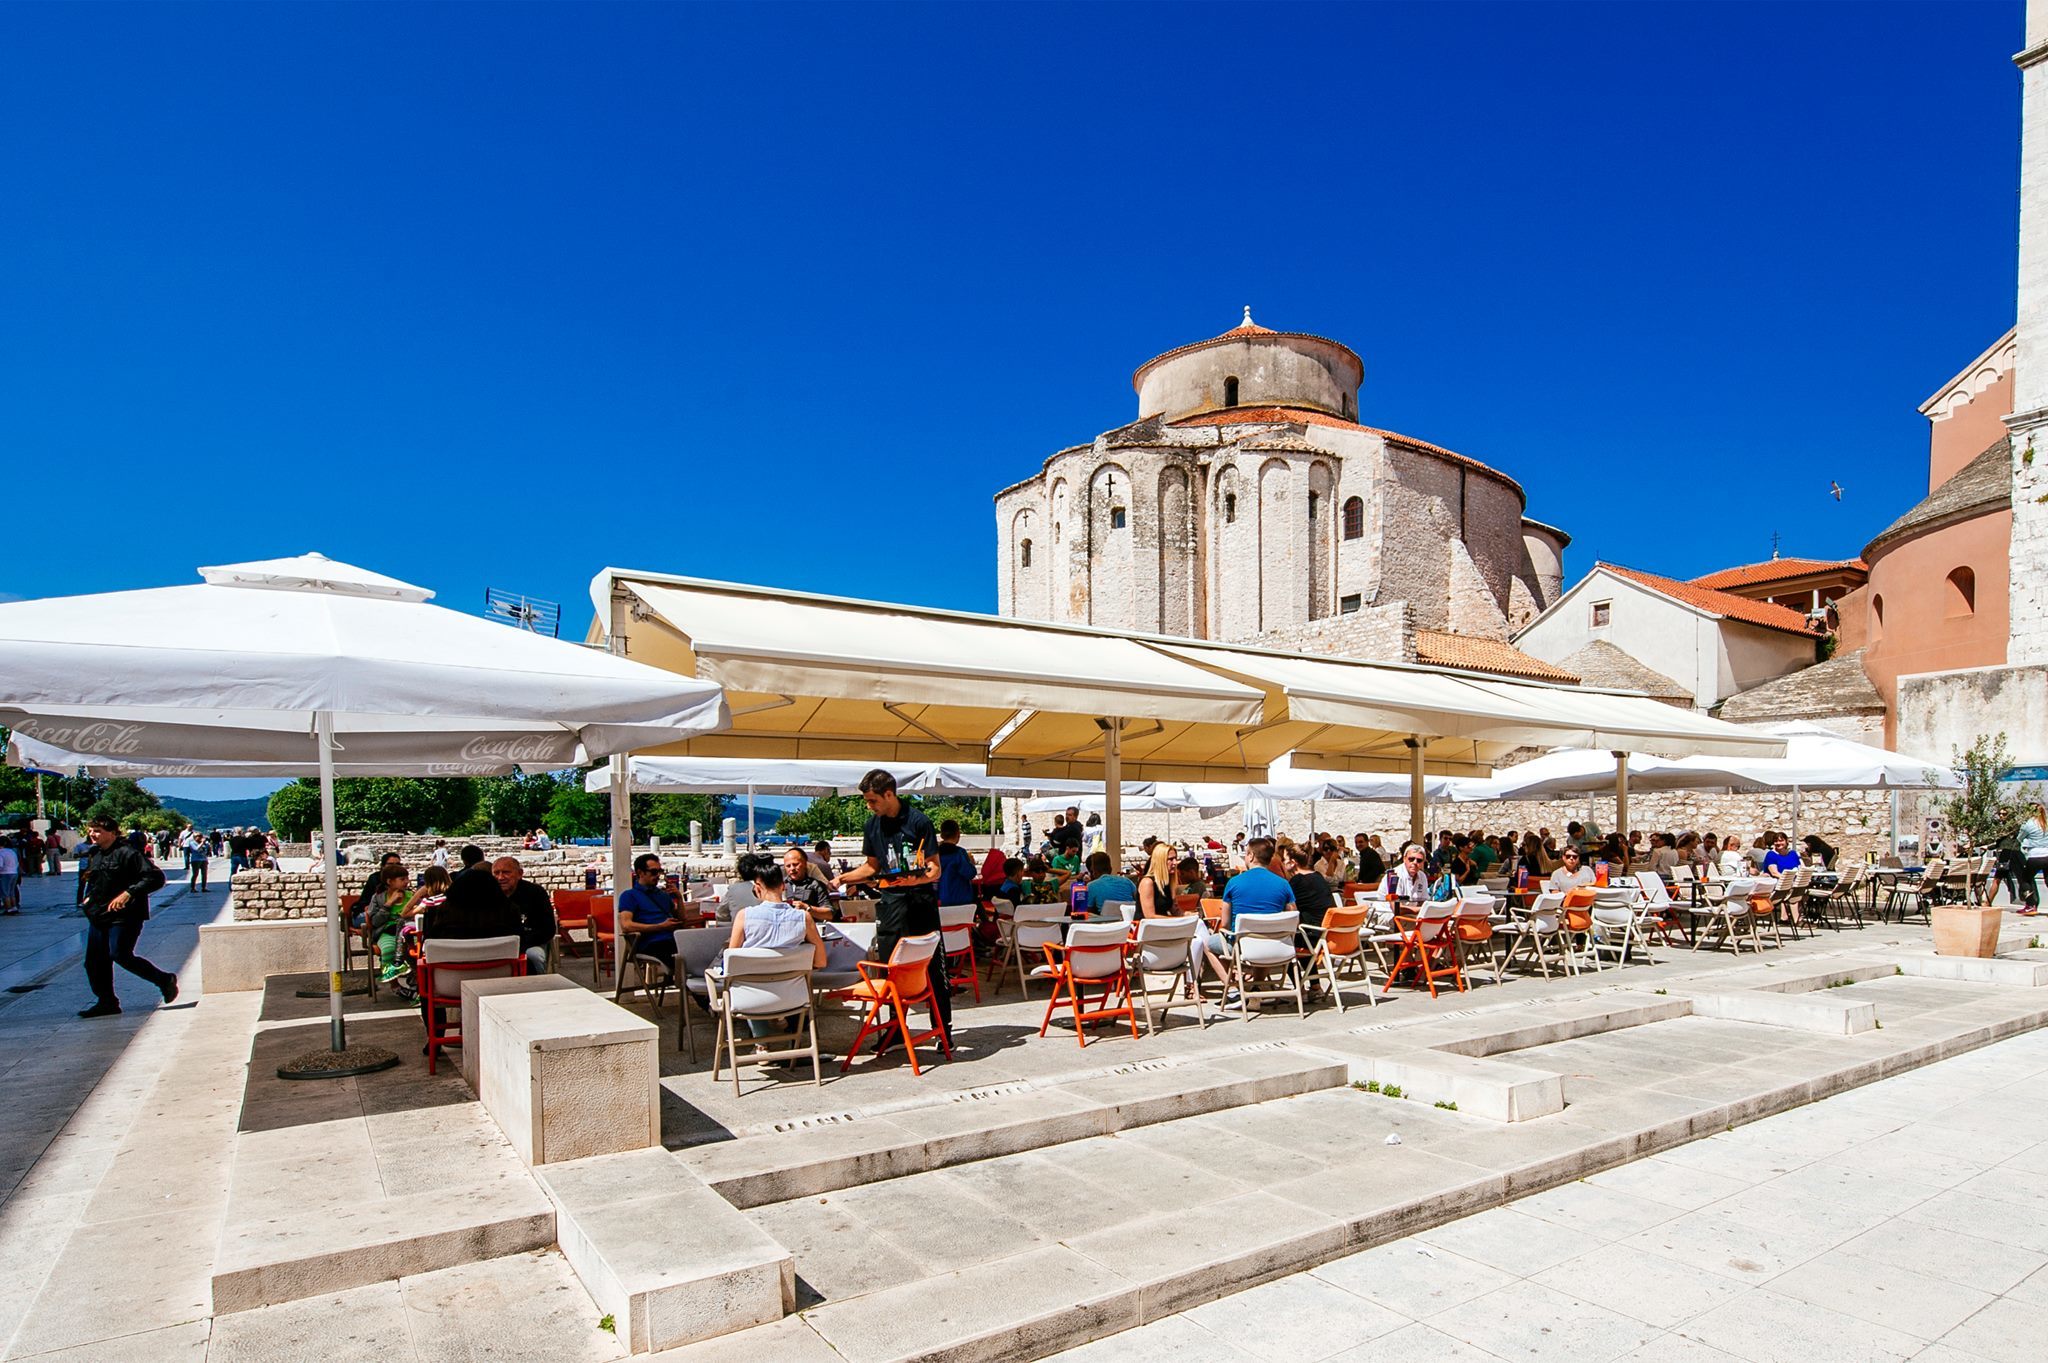 Zadar café guide | The best cafés in Zadar | Time Out Croatia